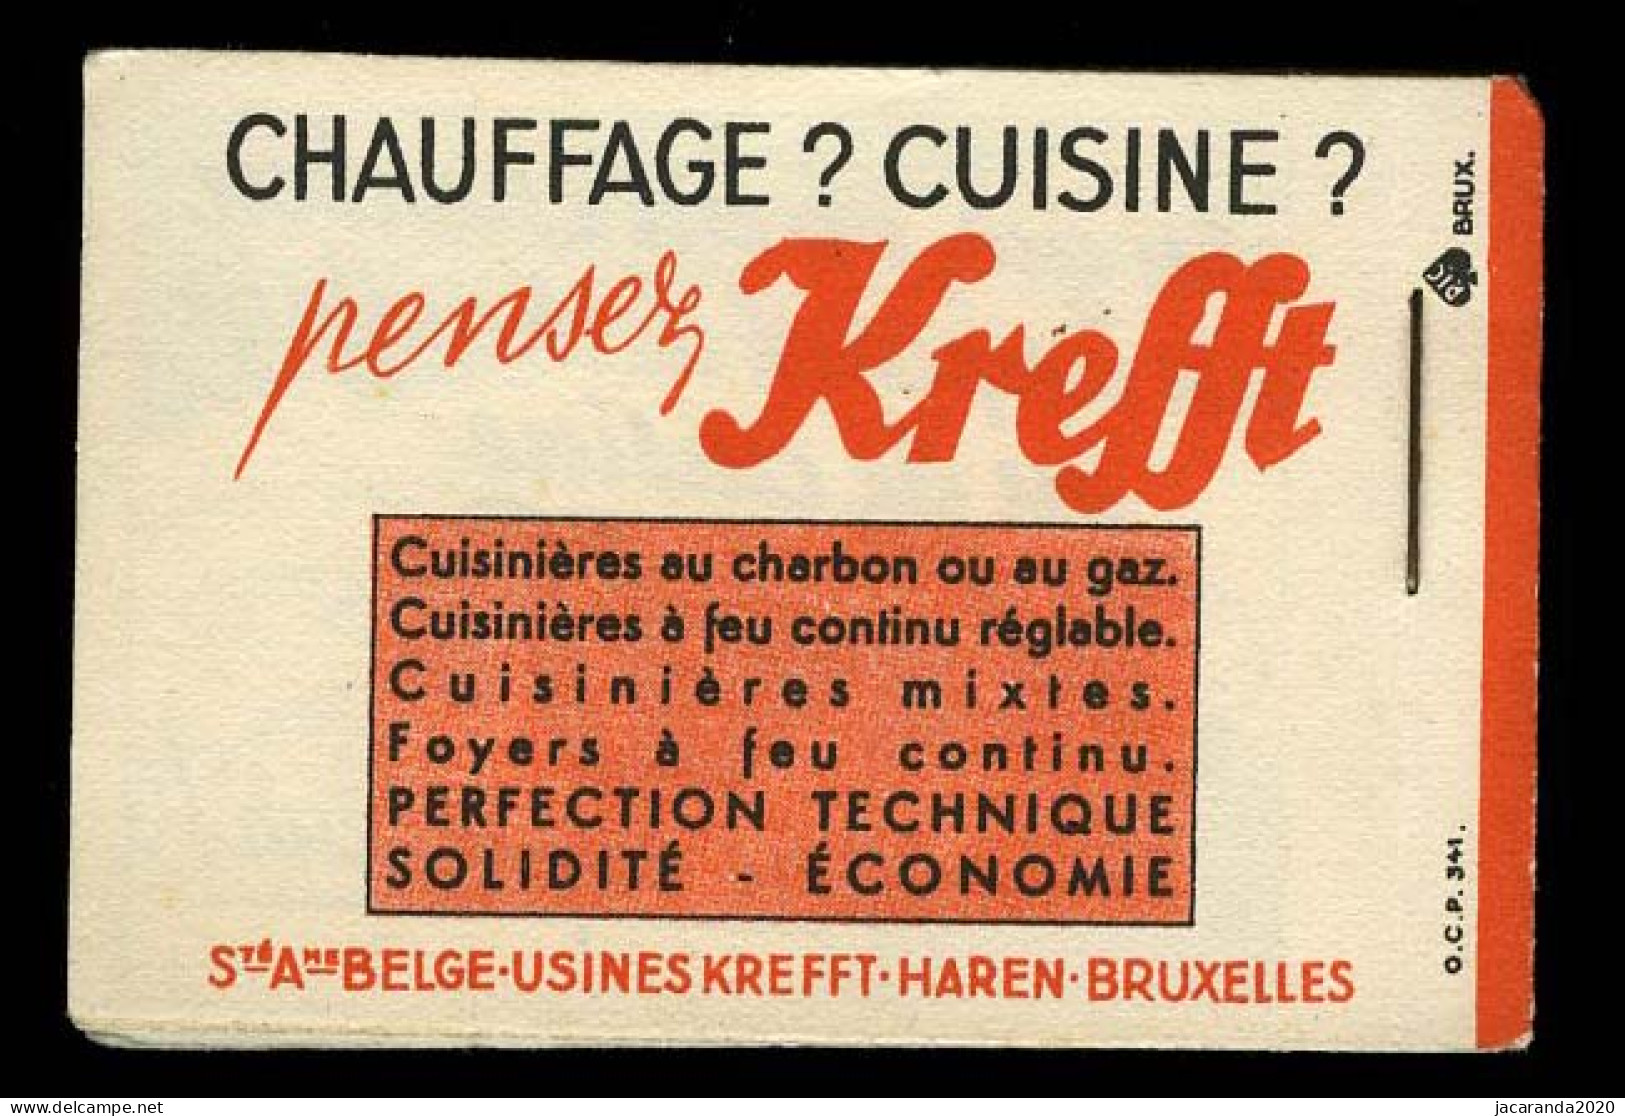 België A35a - Boekje "Une Pêche Miraculeuse" - "Krefft" - 1941 - Rode Rugband - 1907-1941 Alte [A]